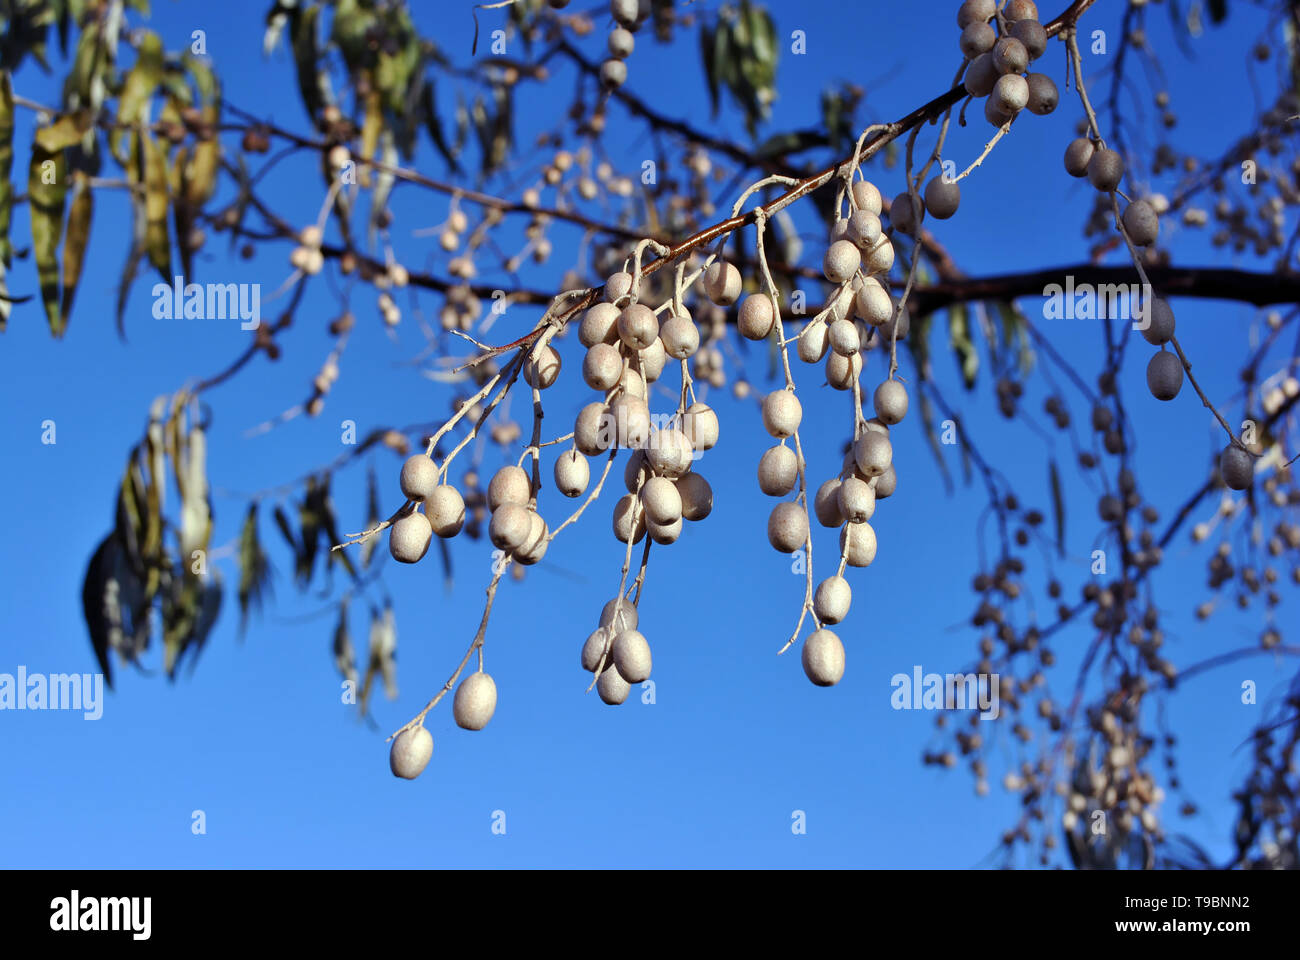 Elaeagnus angustifolia, comunemente chiamato Oliva Russo, argento berry, olivastro, persiano oliva o rami dell'ulivo selvatico con bacche sul cielo blu backgroun Foto Stock